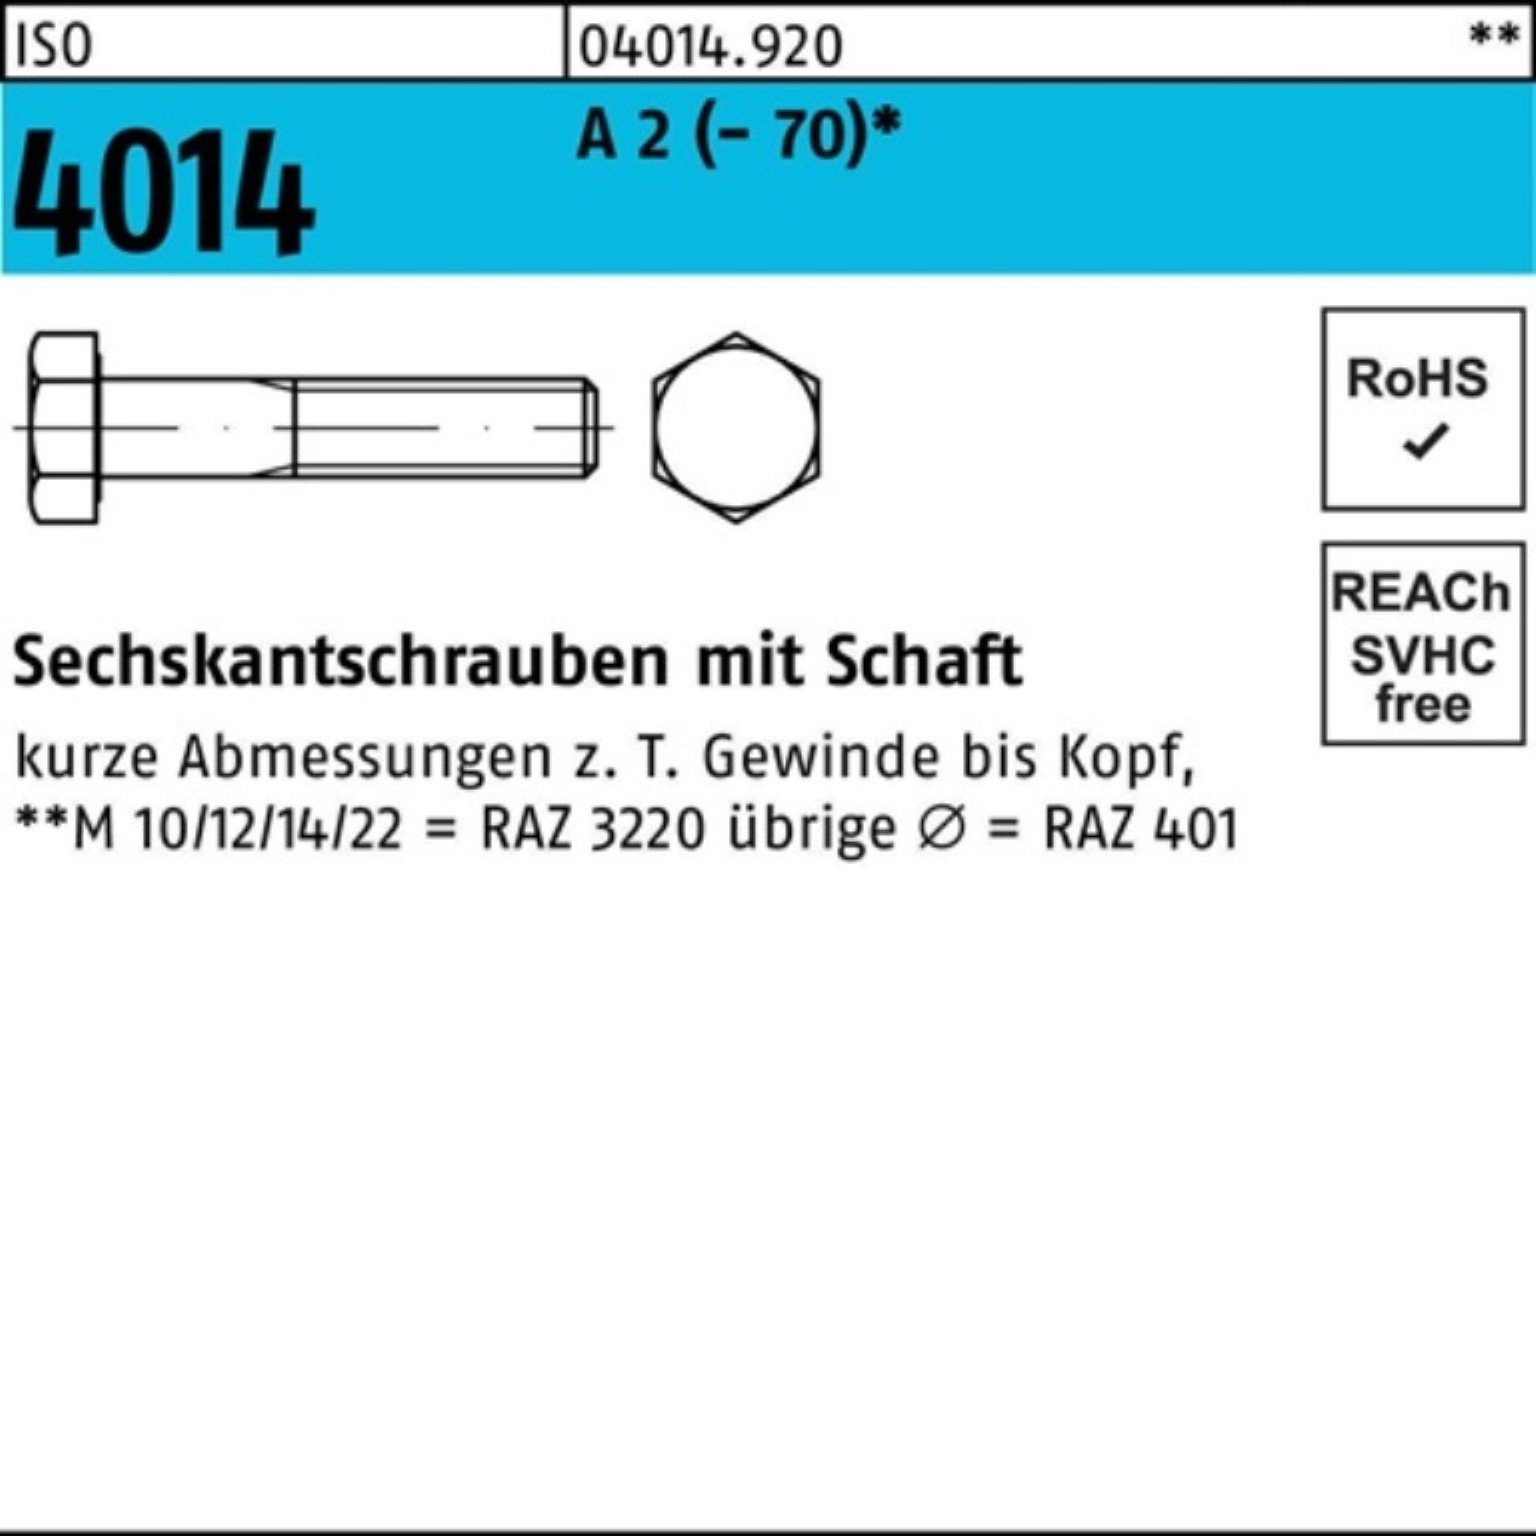 A Sechskantschraube 100er Schaft 100 (70) M20x St Bufab Sechskantschraube Pack ISO 2 4014 1